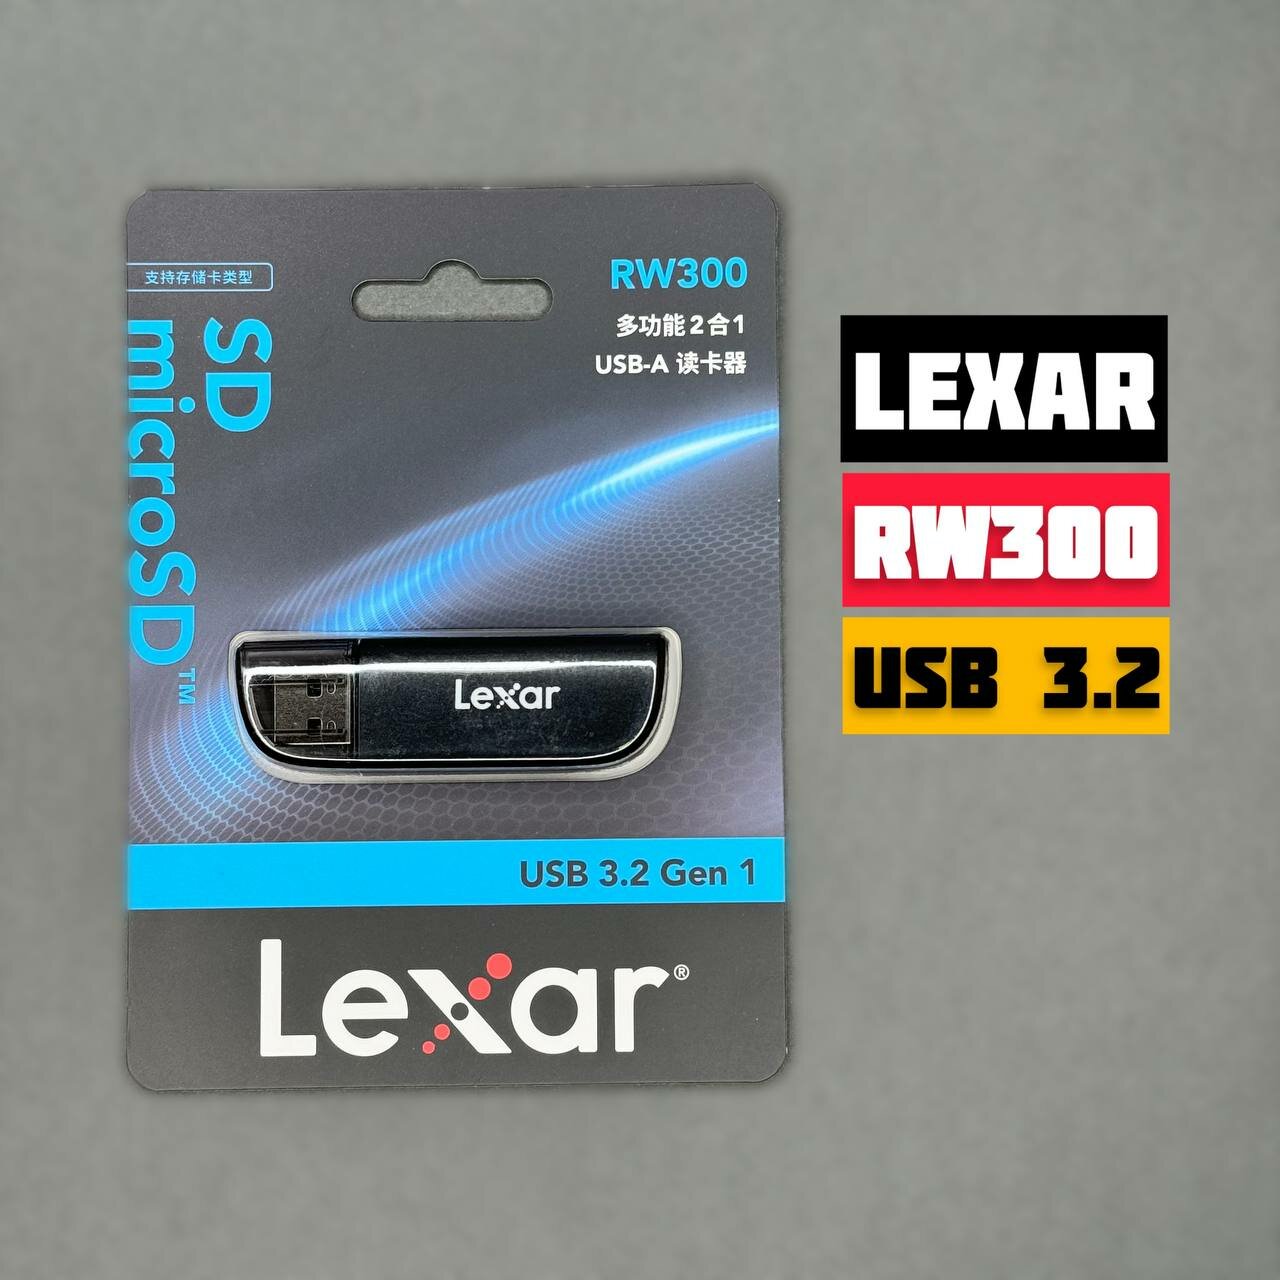 Картридер LEXAR RW300 / Картридер Micro SD USB 3.2 Gen 1 (до 104 мб/с)